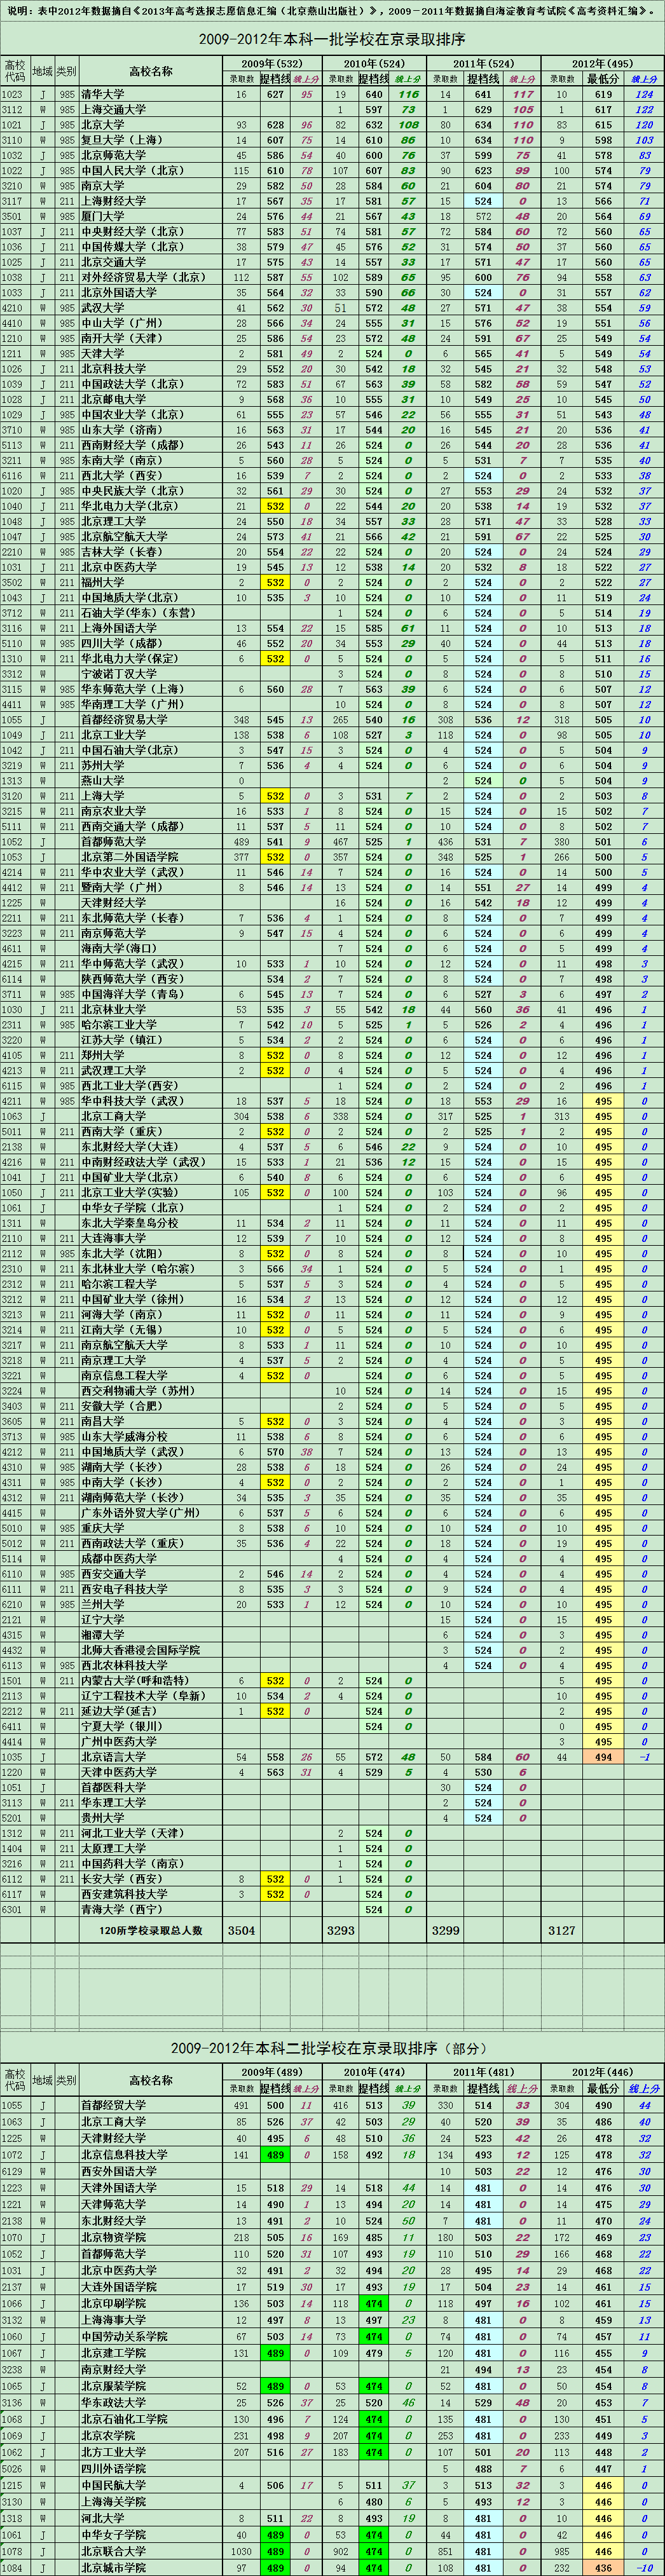 2009-2012年一本高校在京录取分数线排序（文科）2